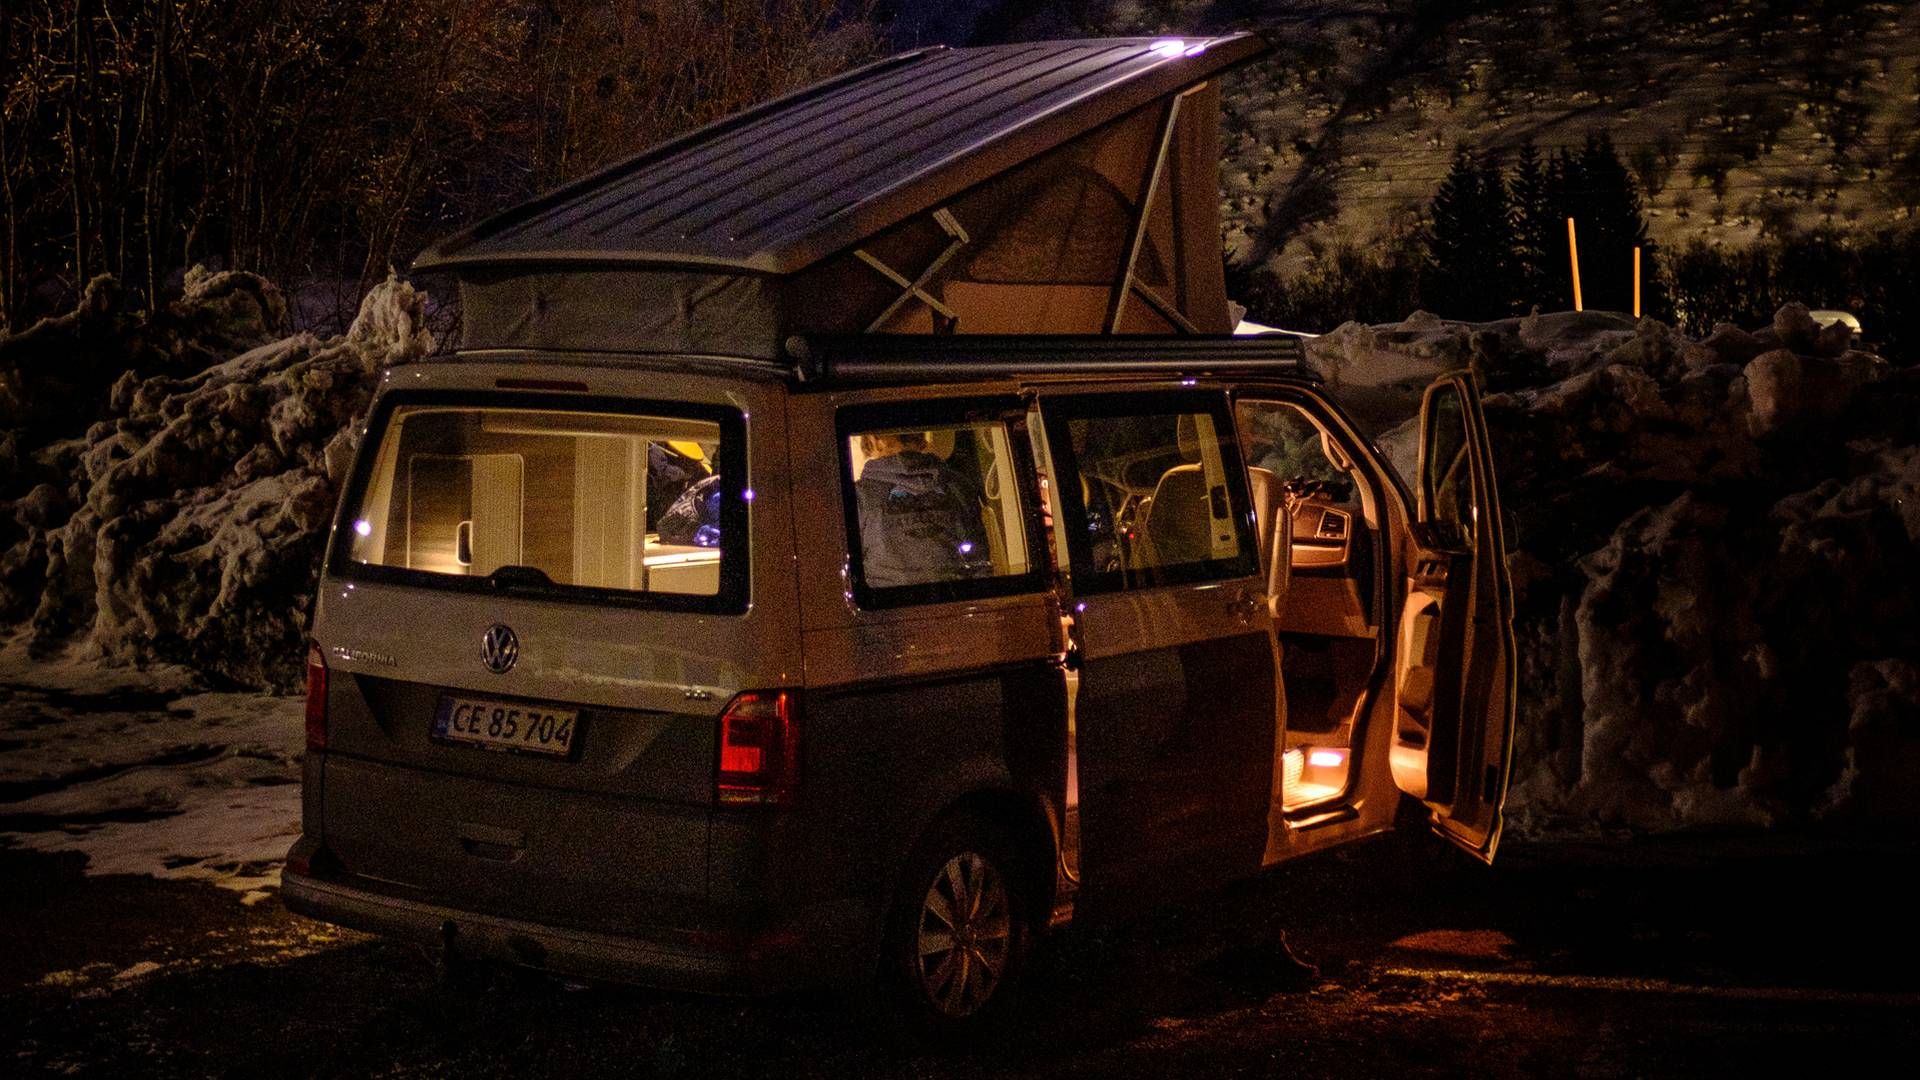 Her overnatter Jens Høgsted med sin søn ved en vejside ved Andermatt i Schweiz, da de i tre uger rejste rundt i familiens VW California campervan. | Foto: PRIVATFOTO